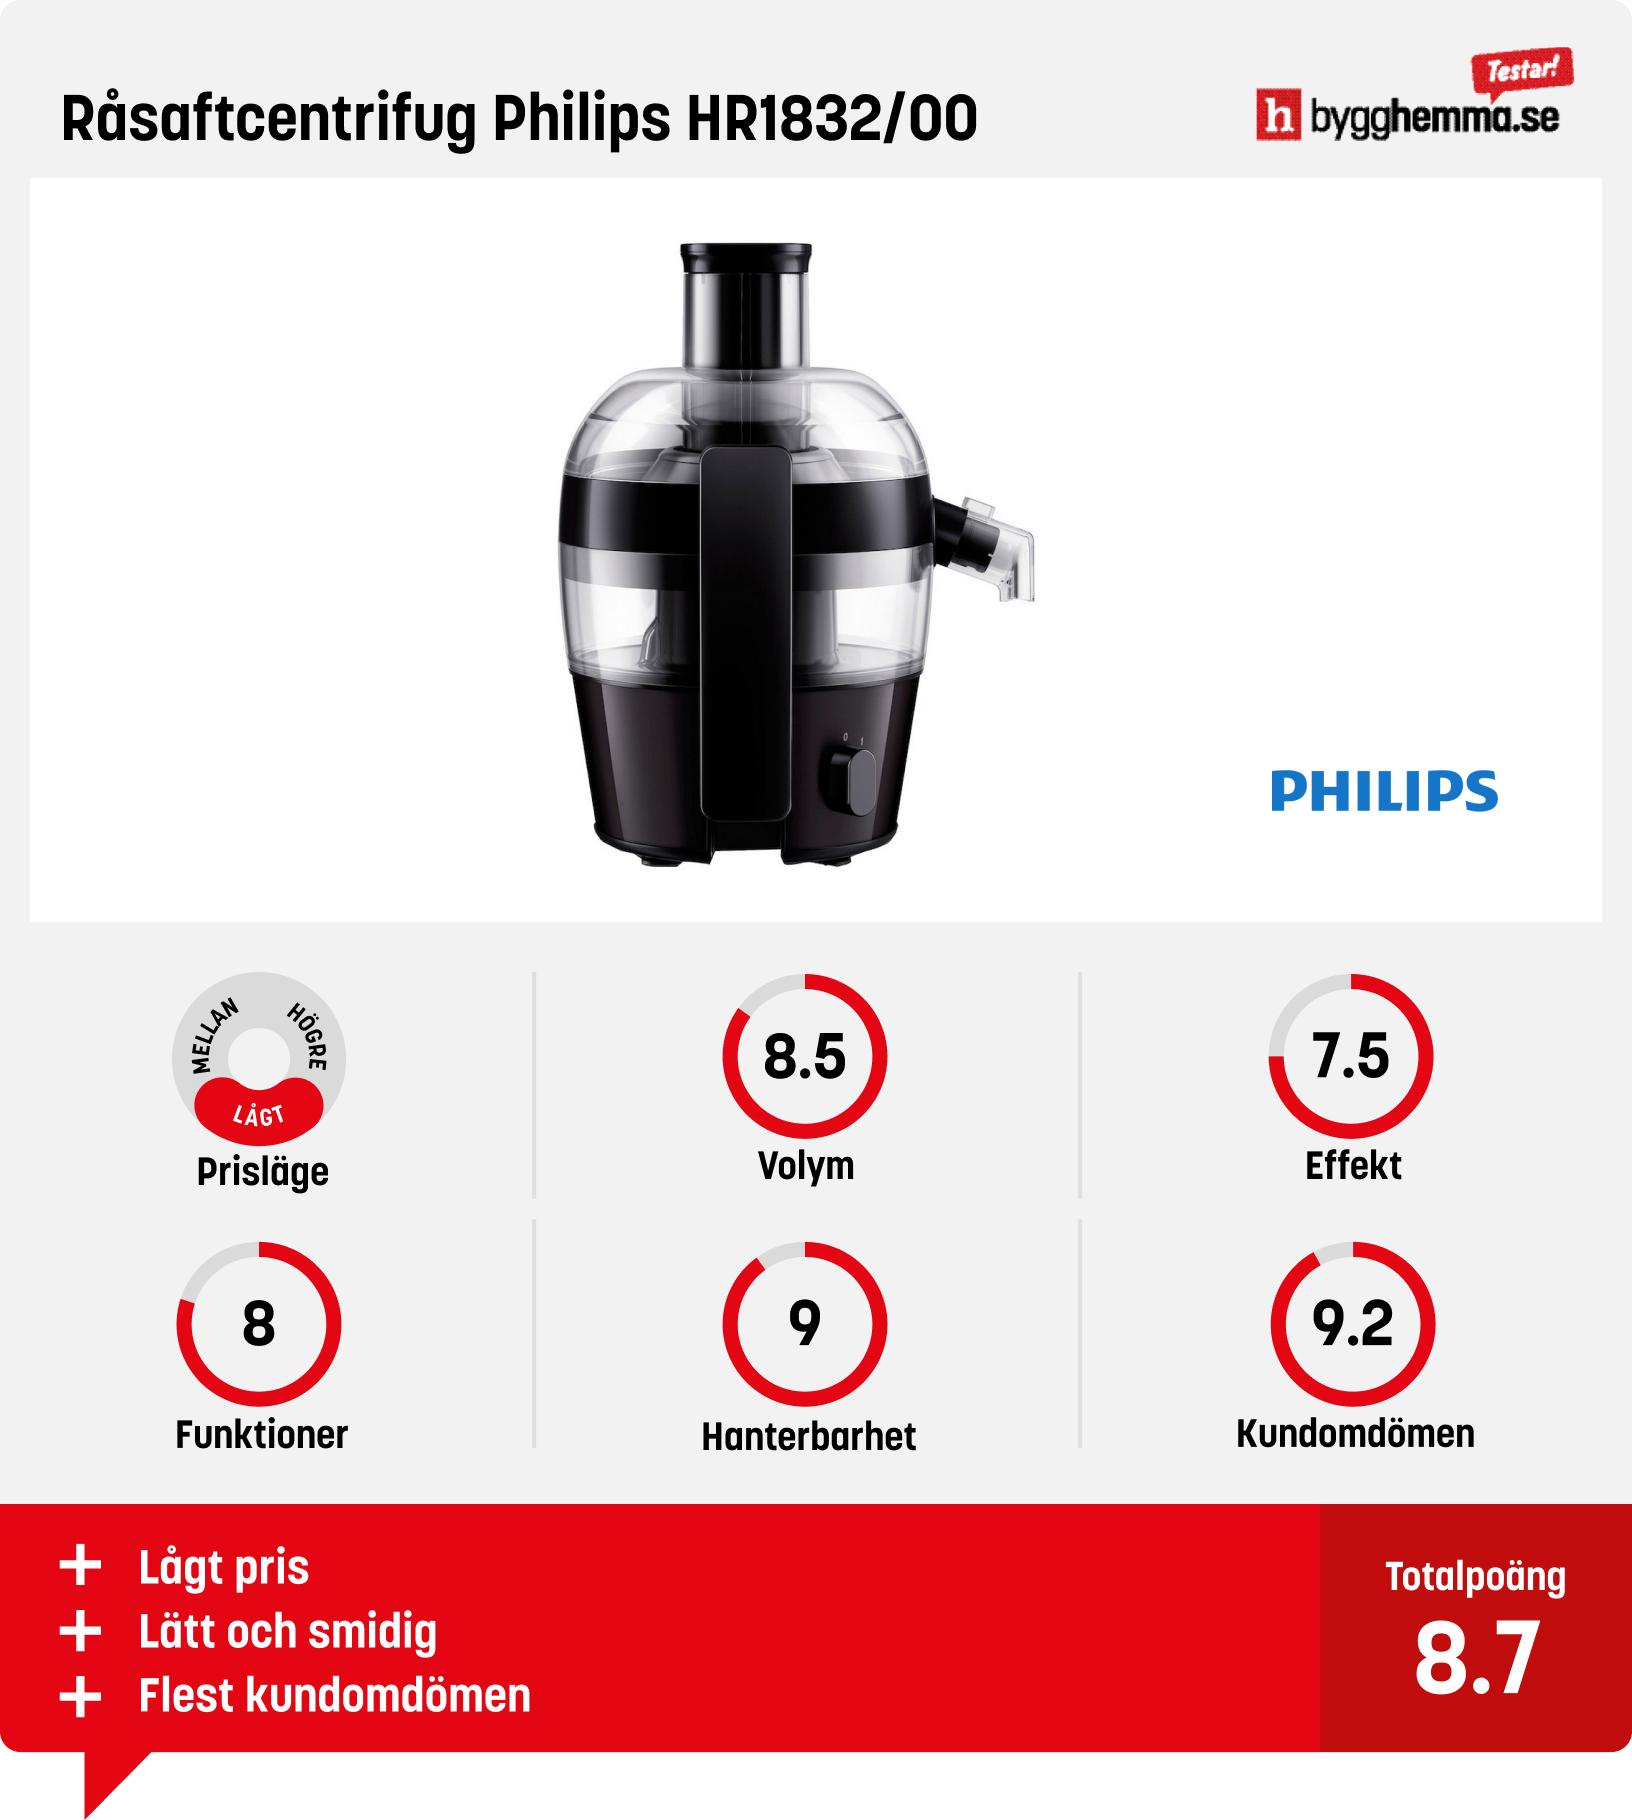 Råsaftcentrifrug bäst i test - Råsaftcentrifug Philips HR1832/00